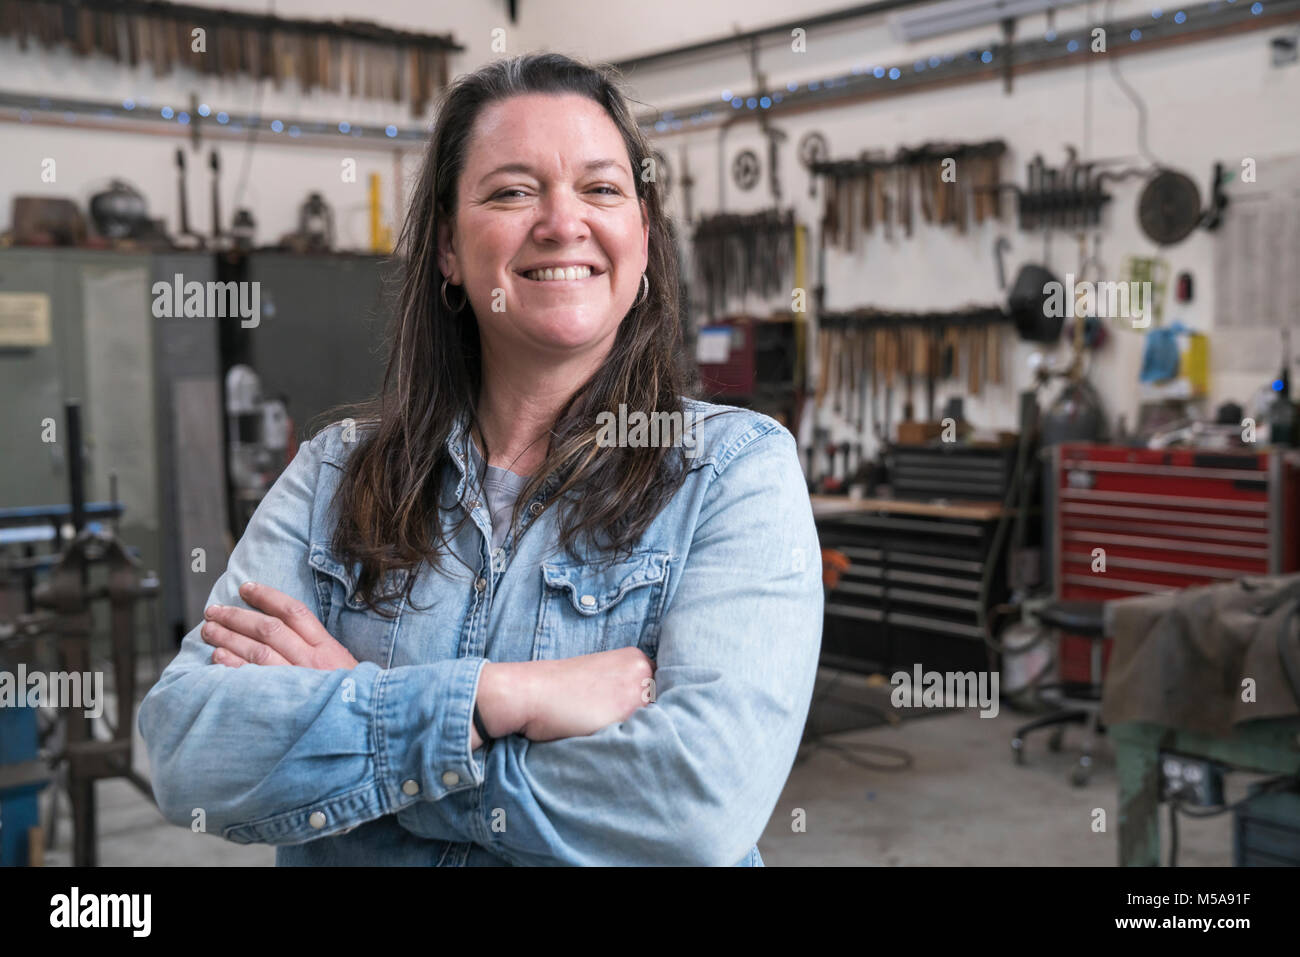 Frau mit braunem Haar zu tragen Jeanshemd in der Metallwerkstatt, lächeln in die Kamera. Stockfoto